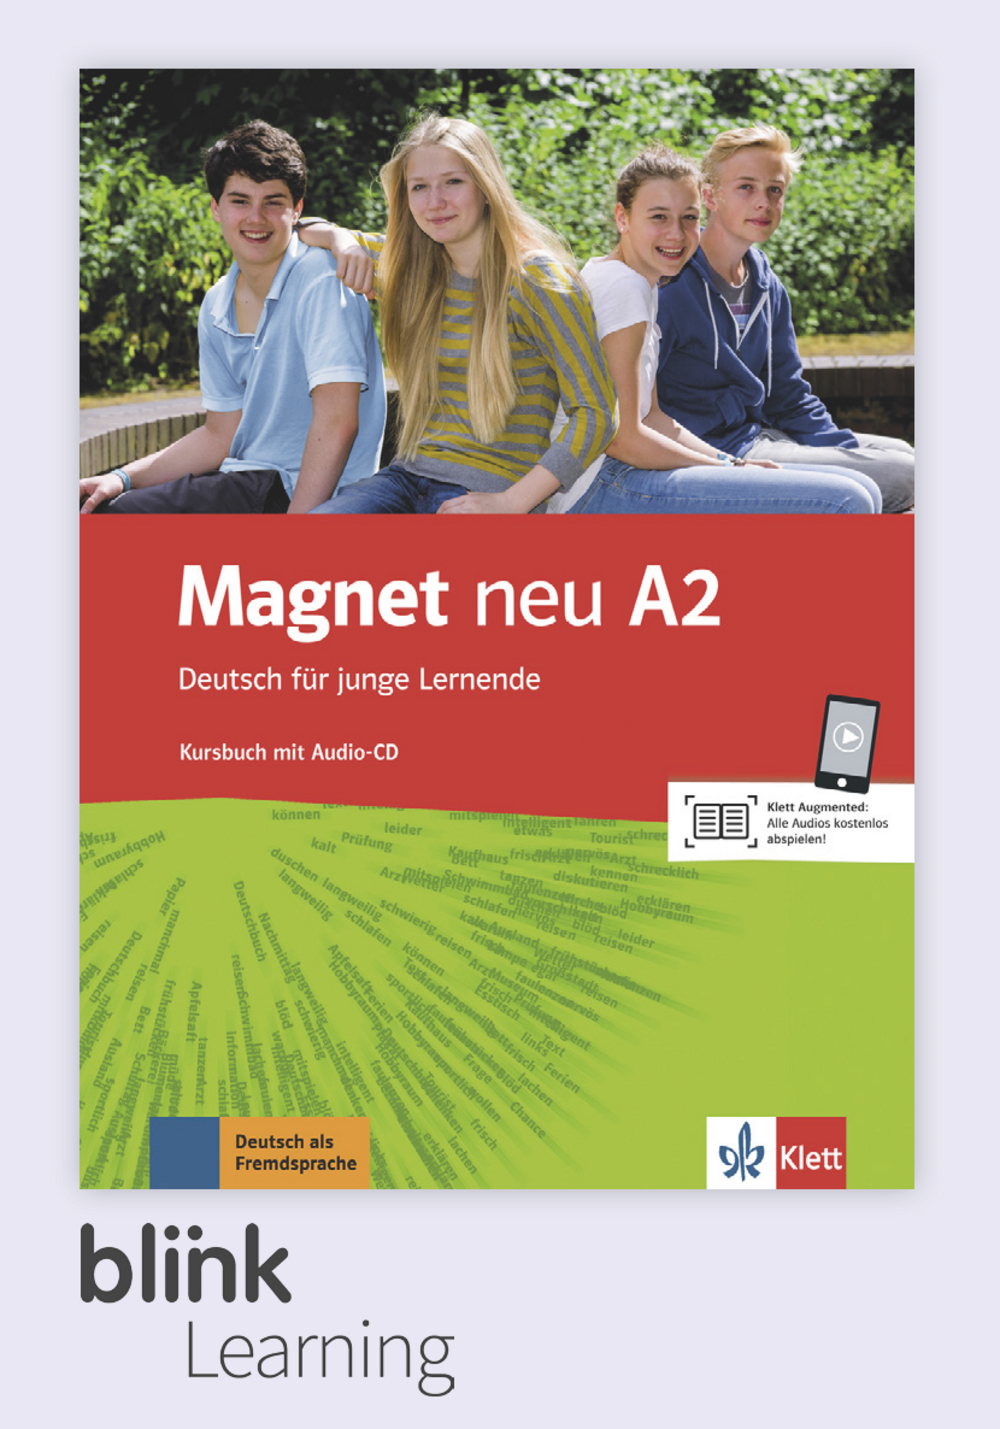 Magnet neu A2 Digital Kursbuch fur Lernende / Цифровой учебник для ученика